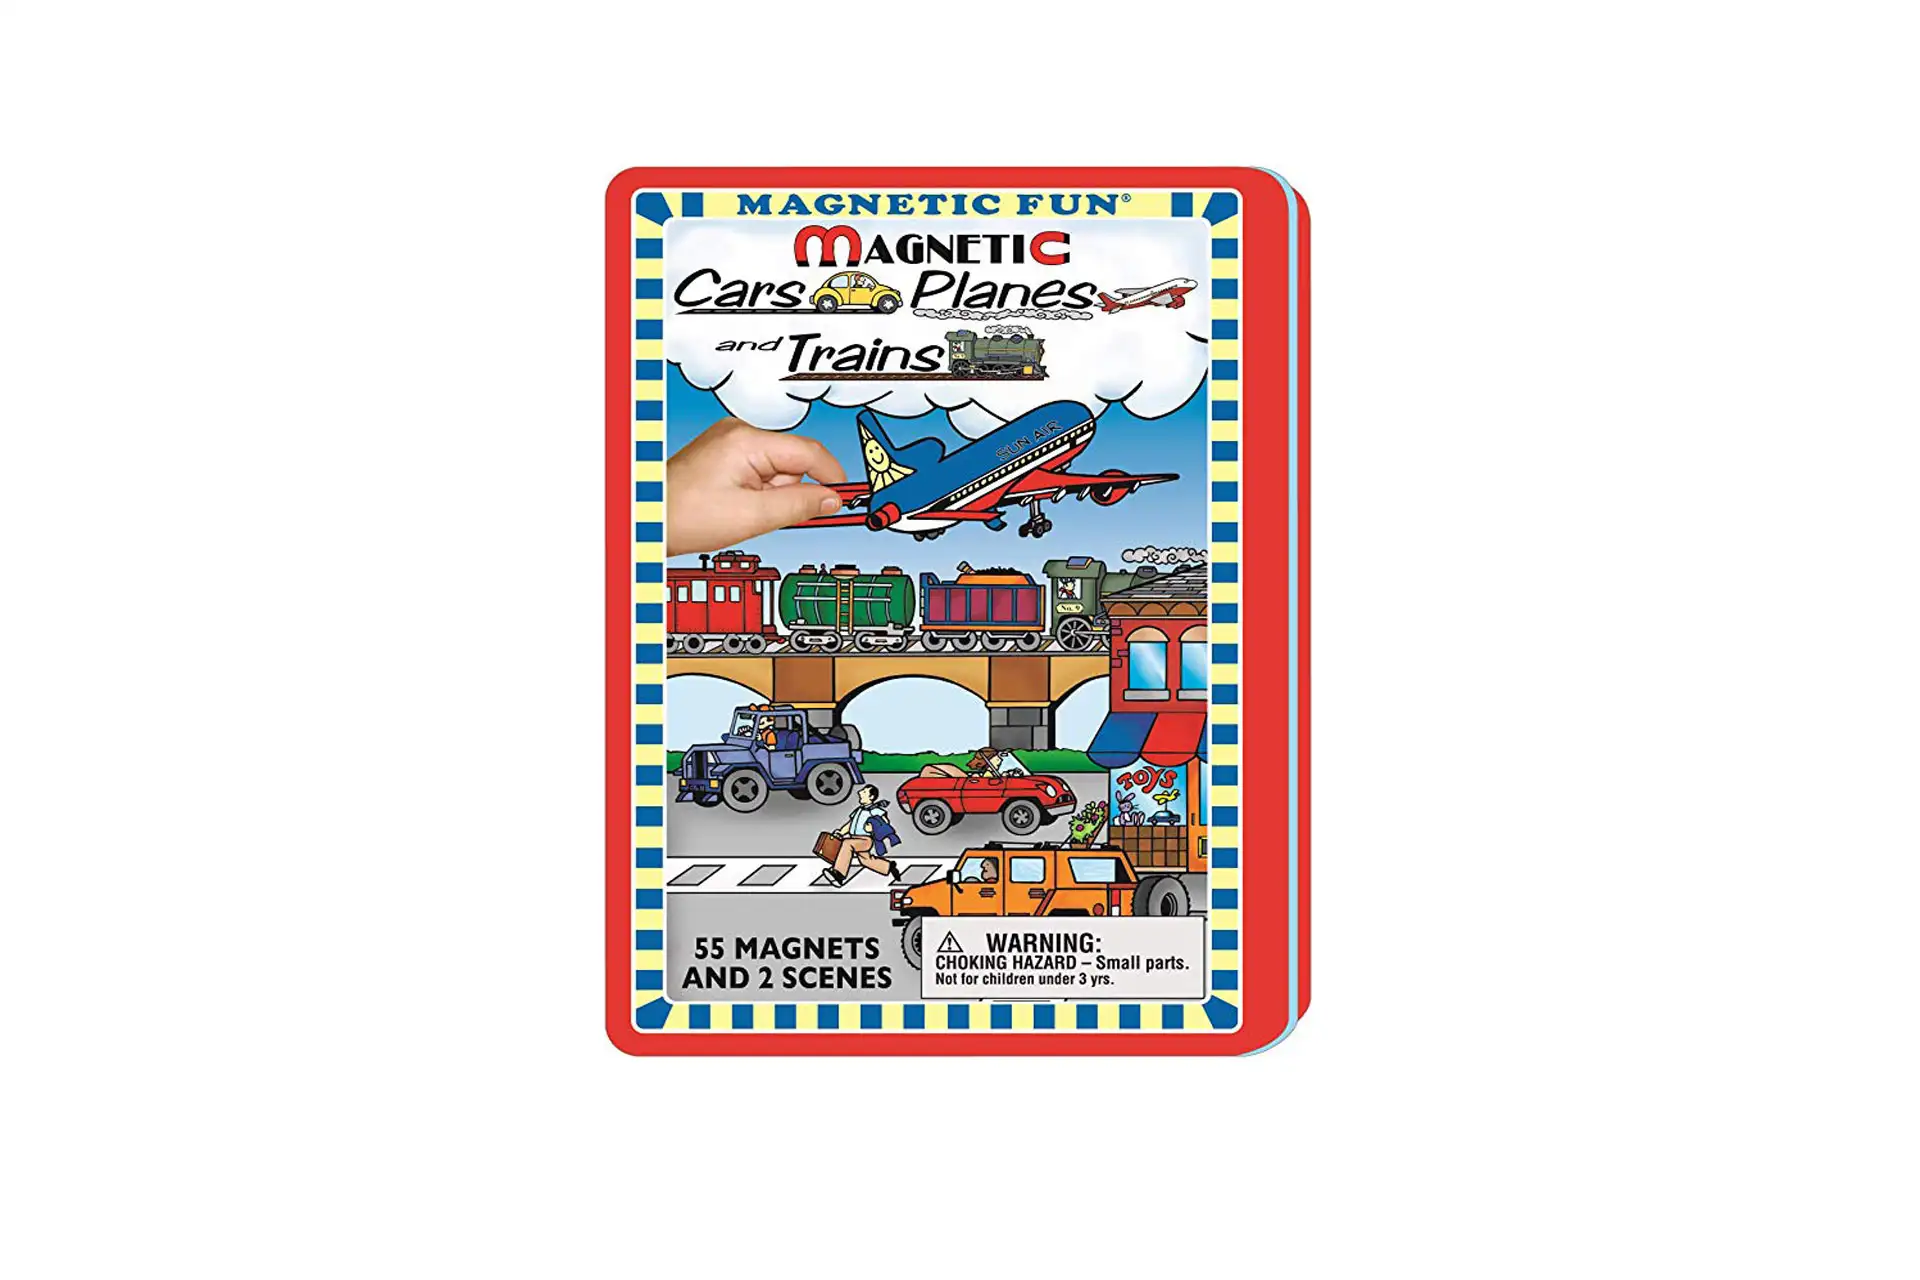 Magnet travel toy; Courtesy of Amazon